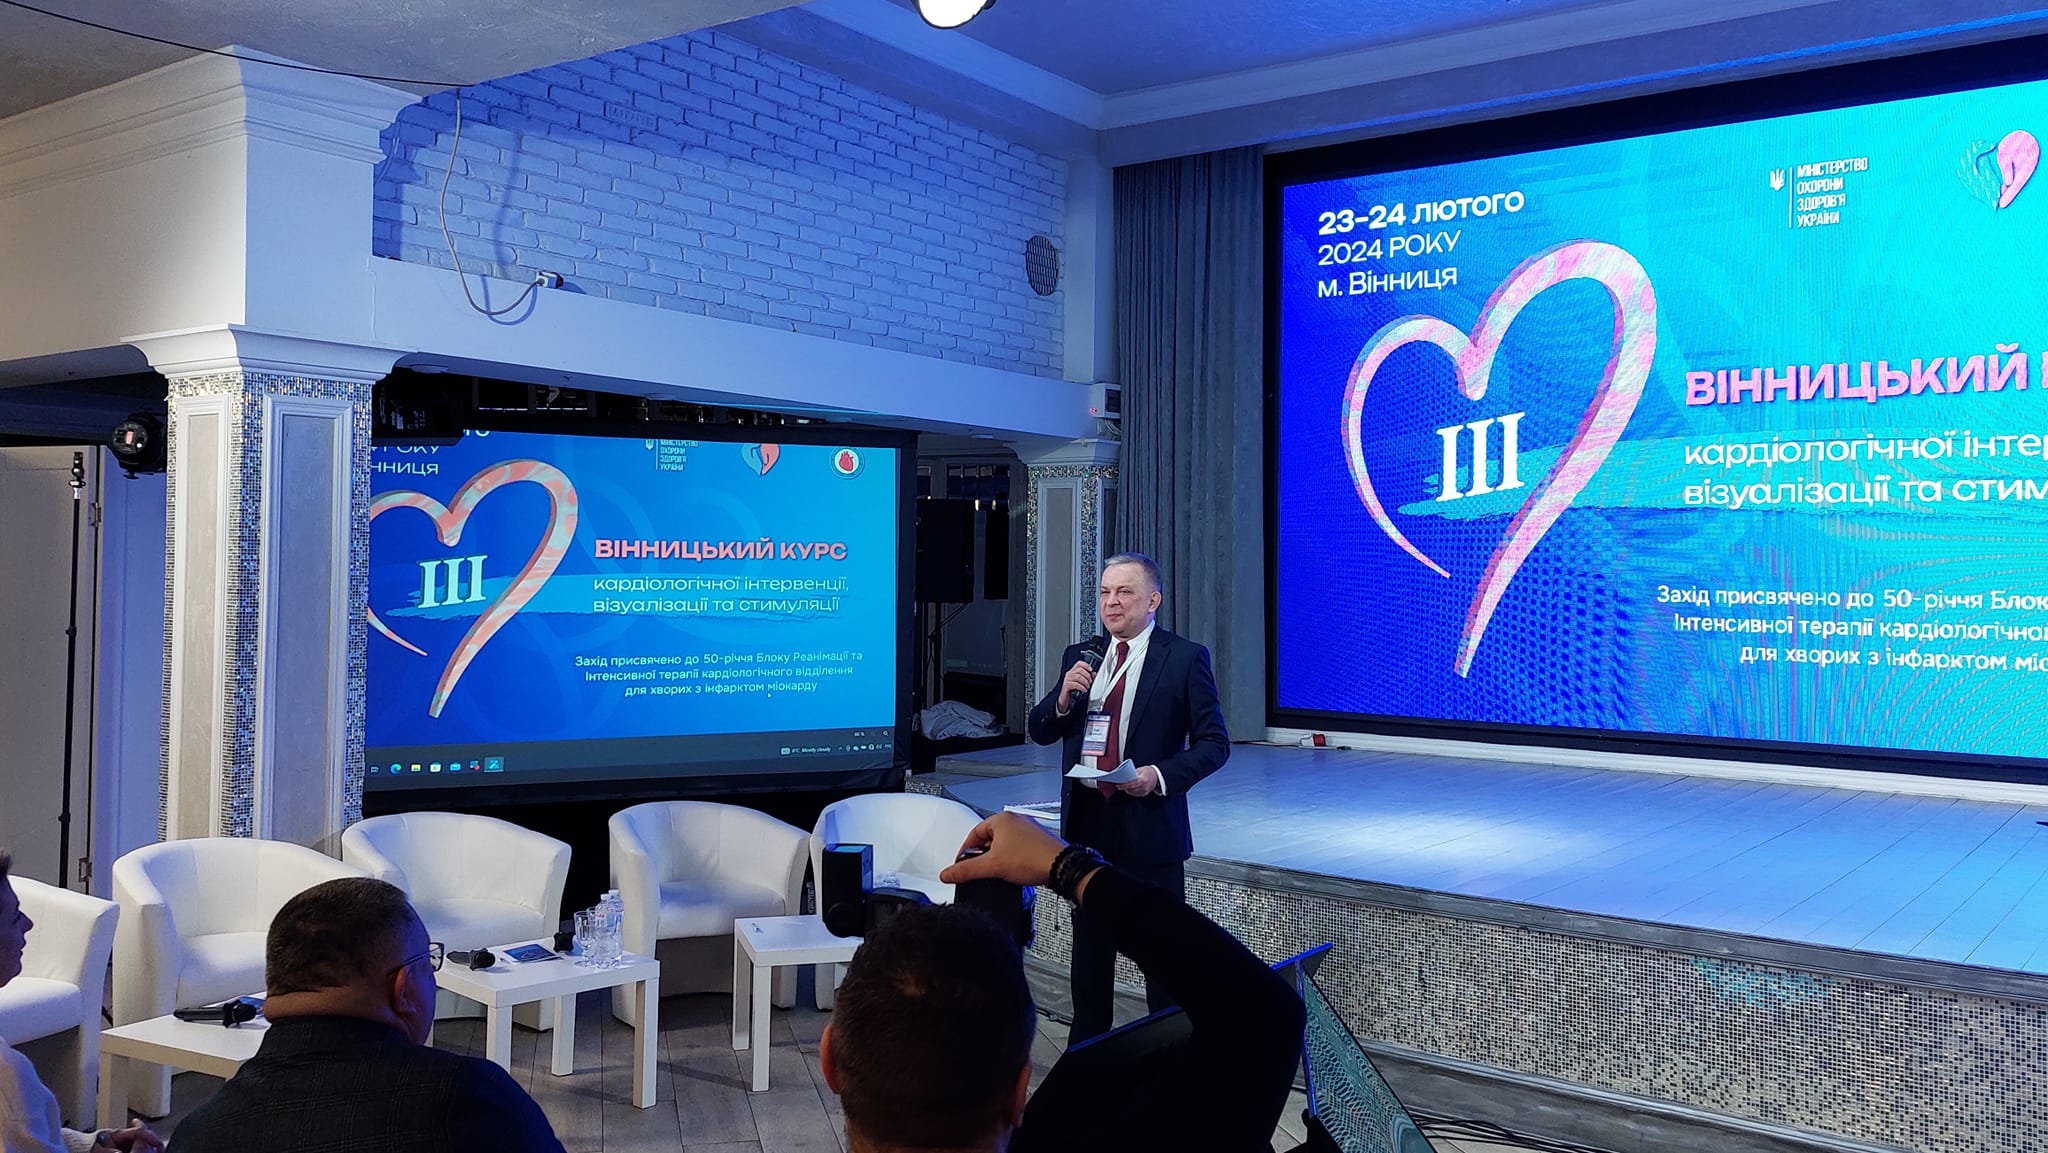 У Вінниці стартувала конференція з кардіологічної інтервенції, візуалізації та стимуляції